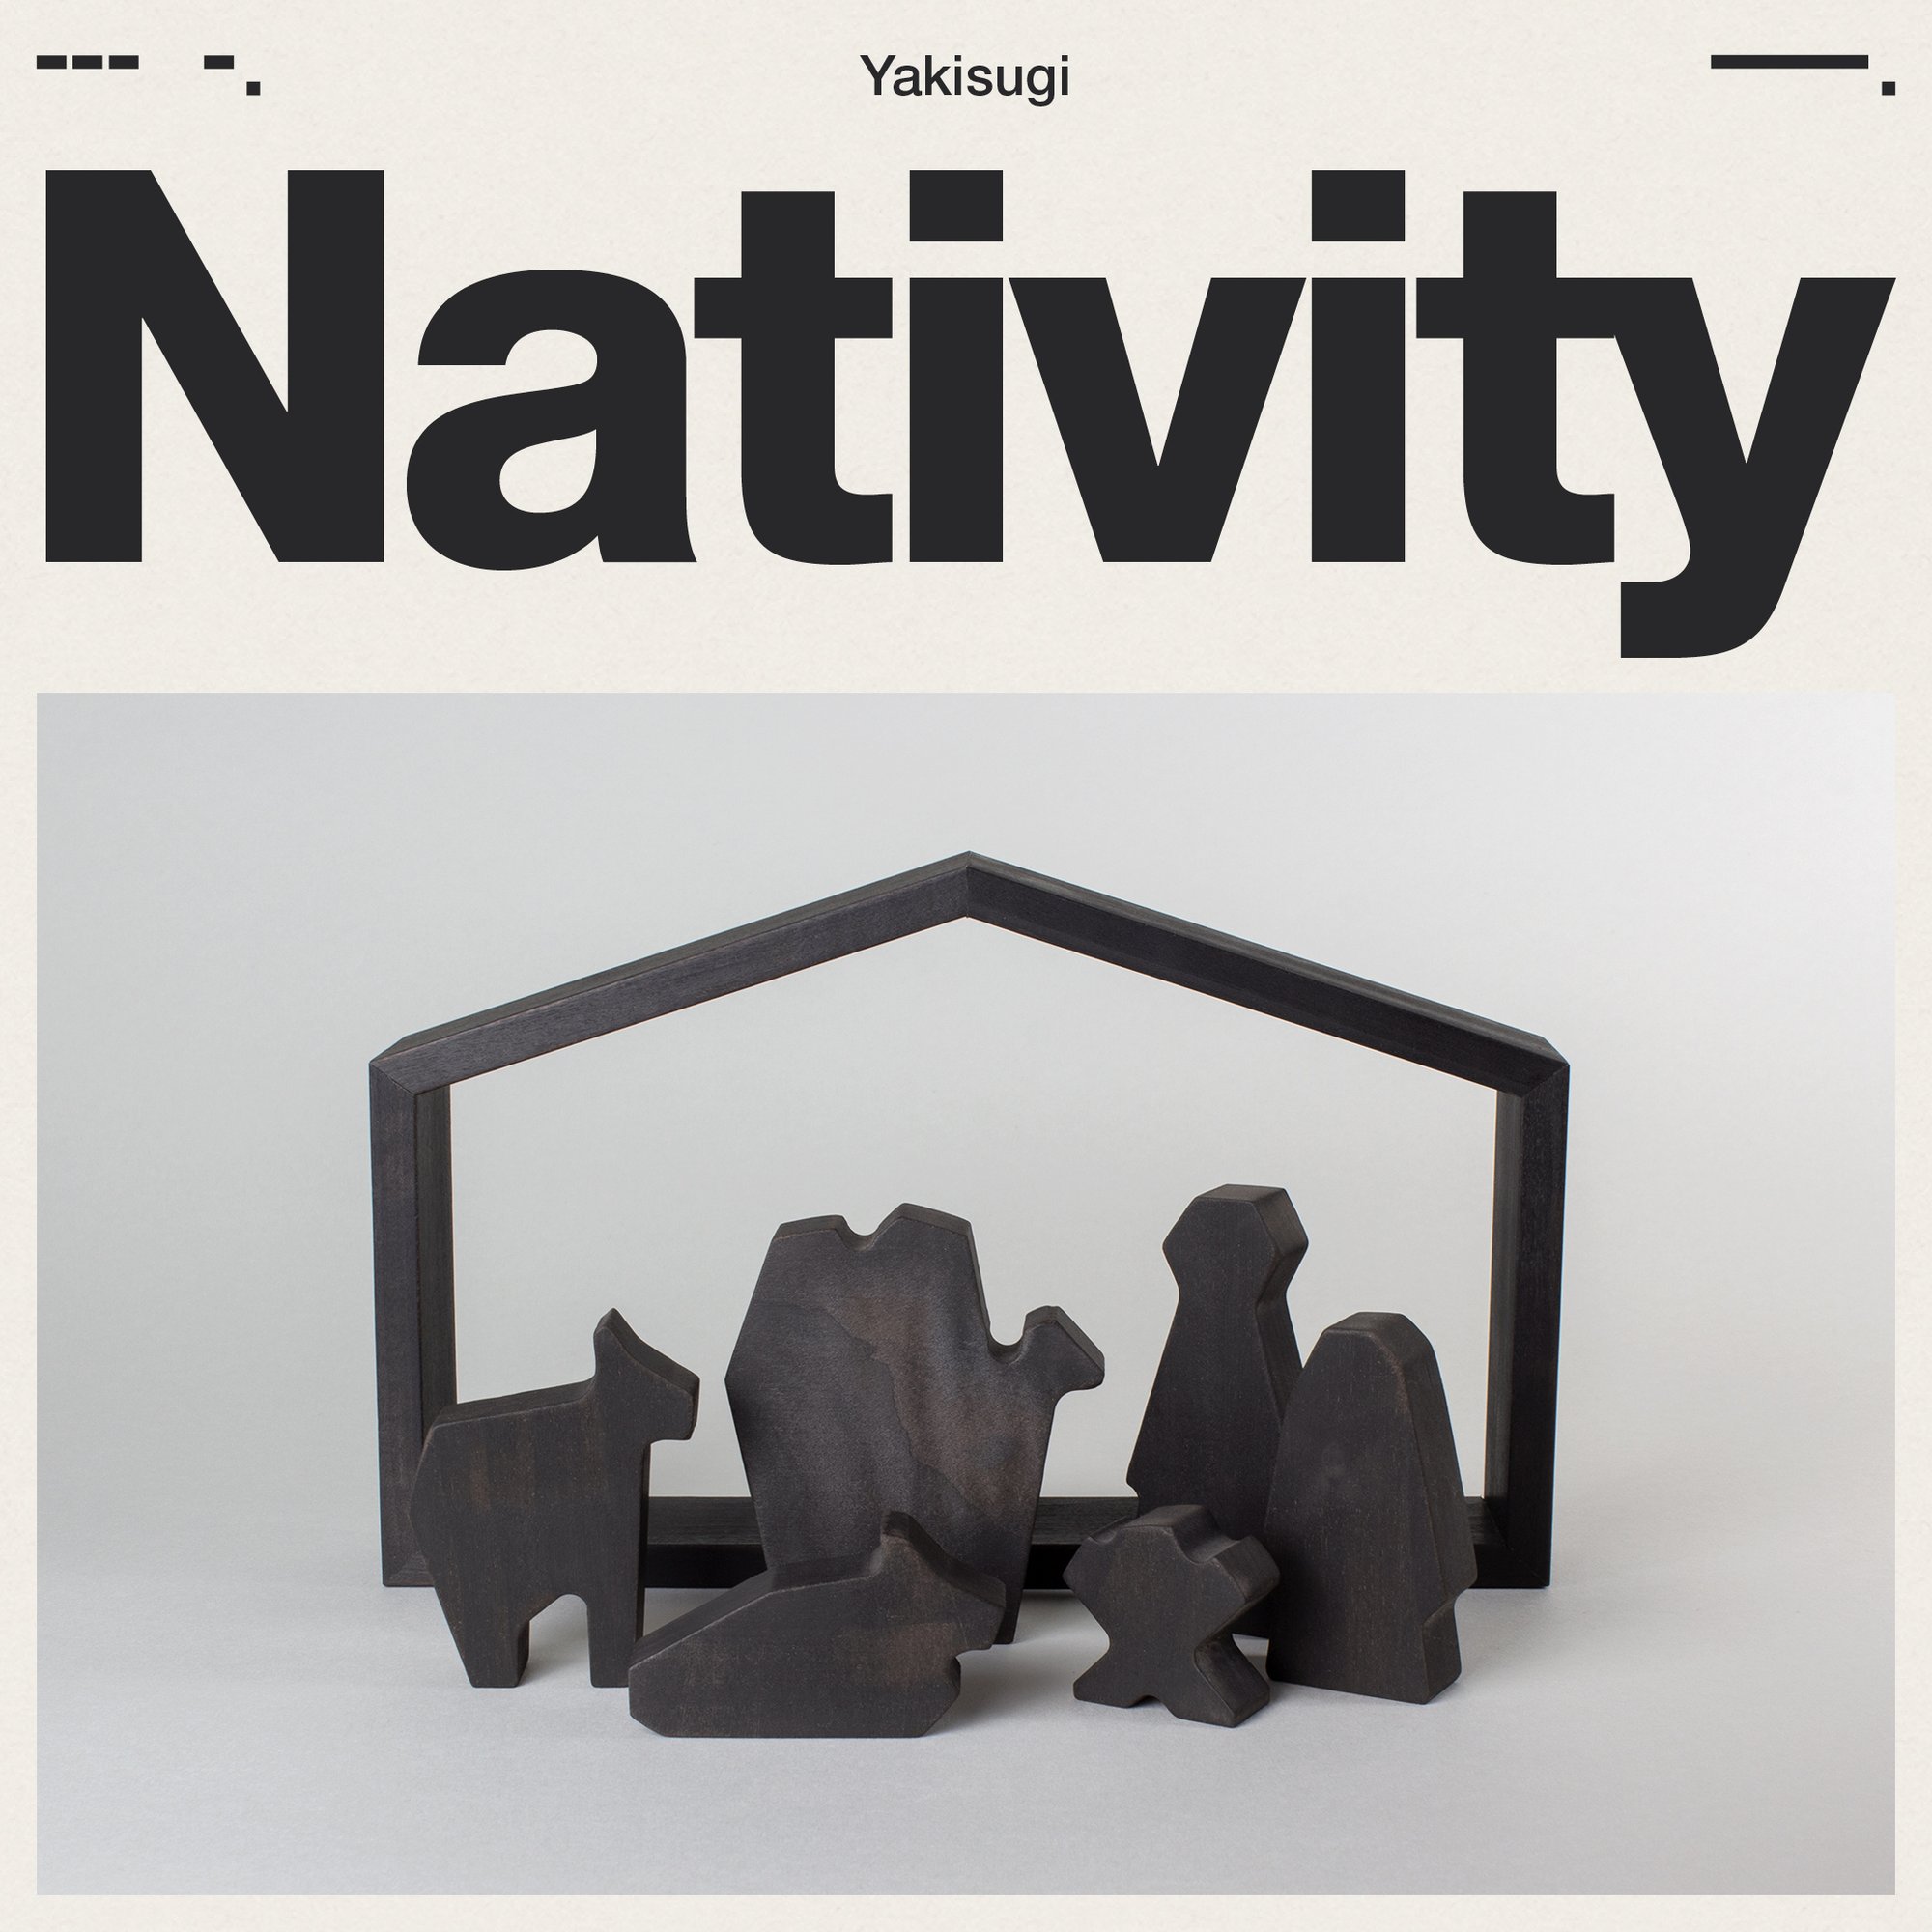 Image of Nativity—Yakisugi